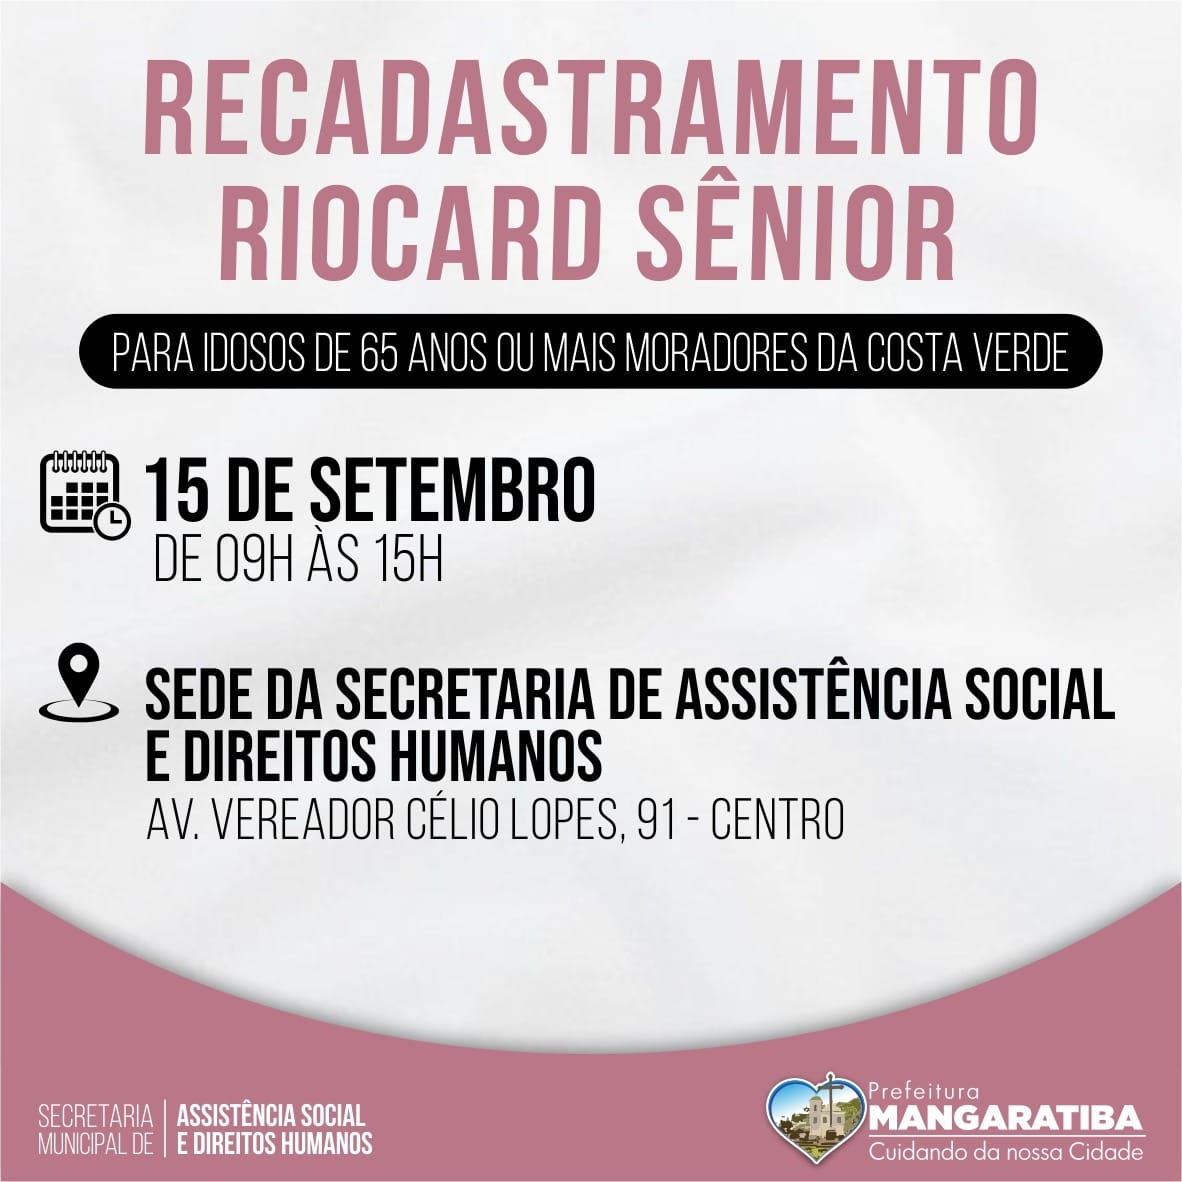 Mangaratiba realiza recadastramento do Riocard Sênior na próxima quarta-feira